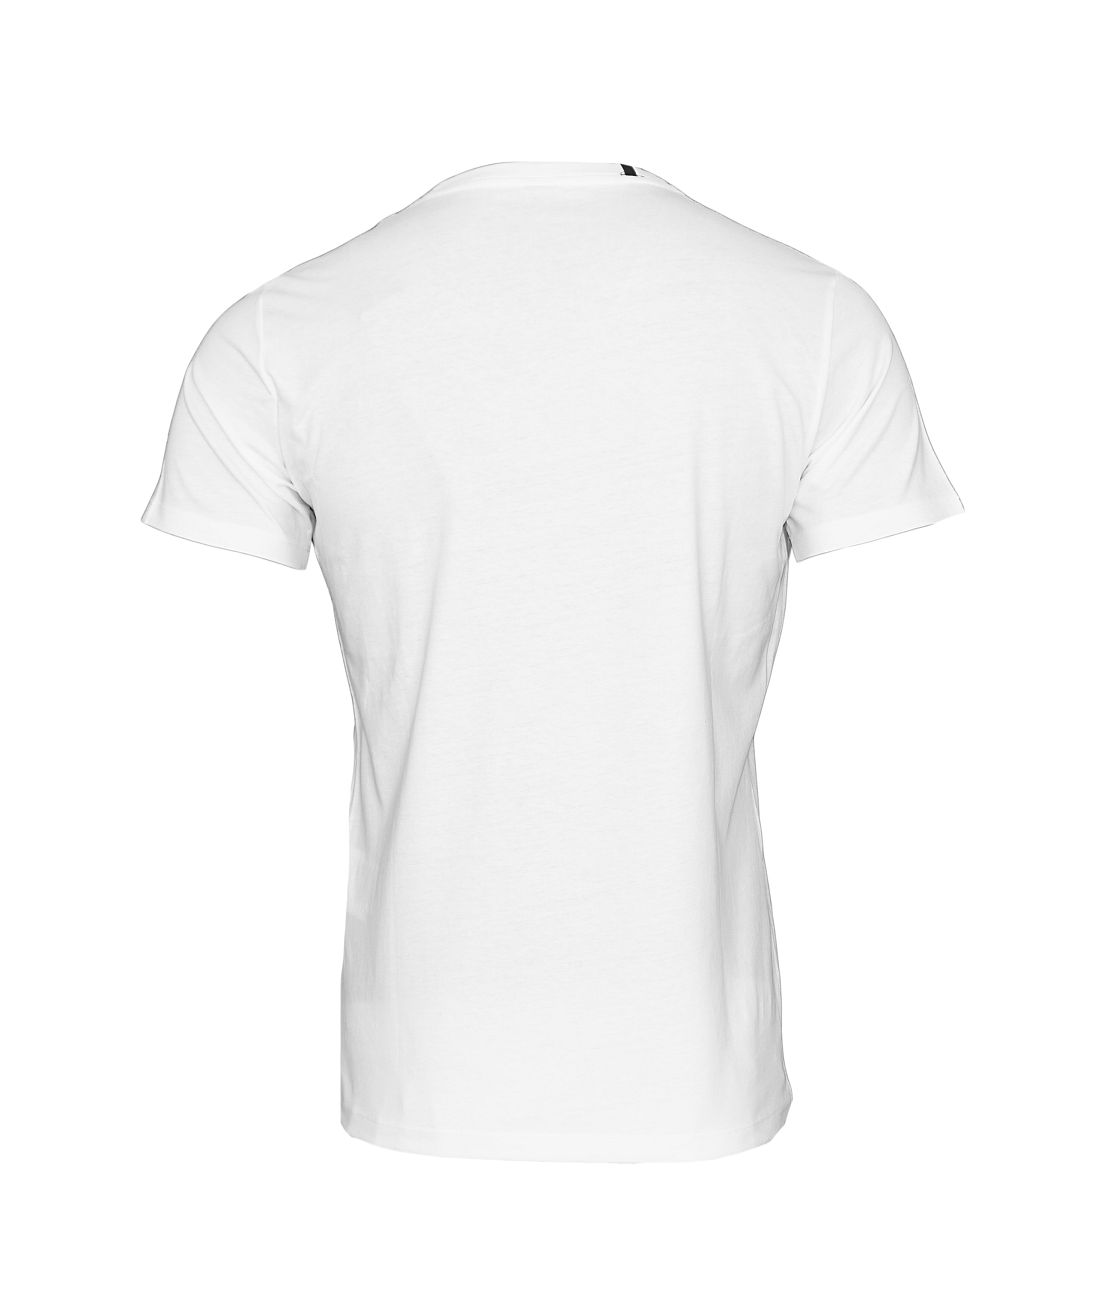 Replay T-Shirt Shirt Rundhals M3594.000 2660.001 white S18-RPT3